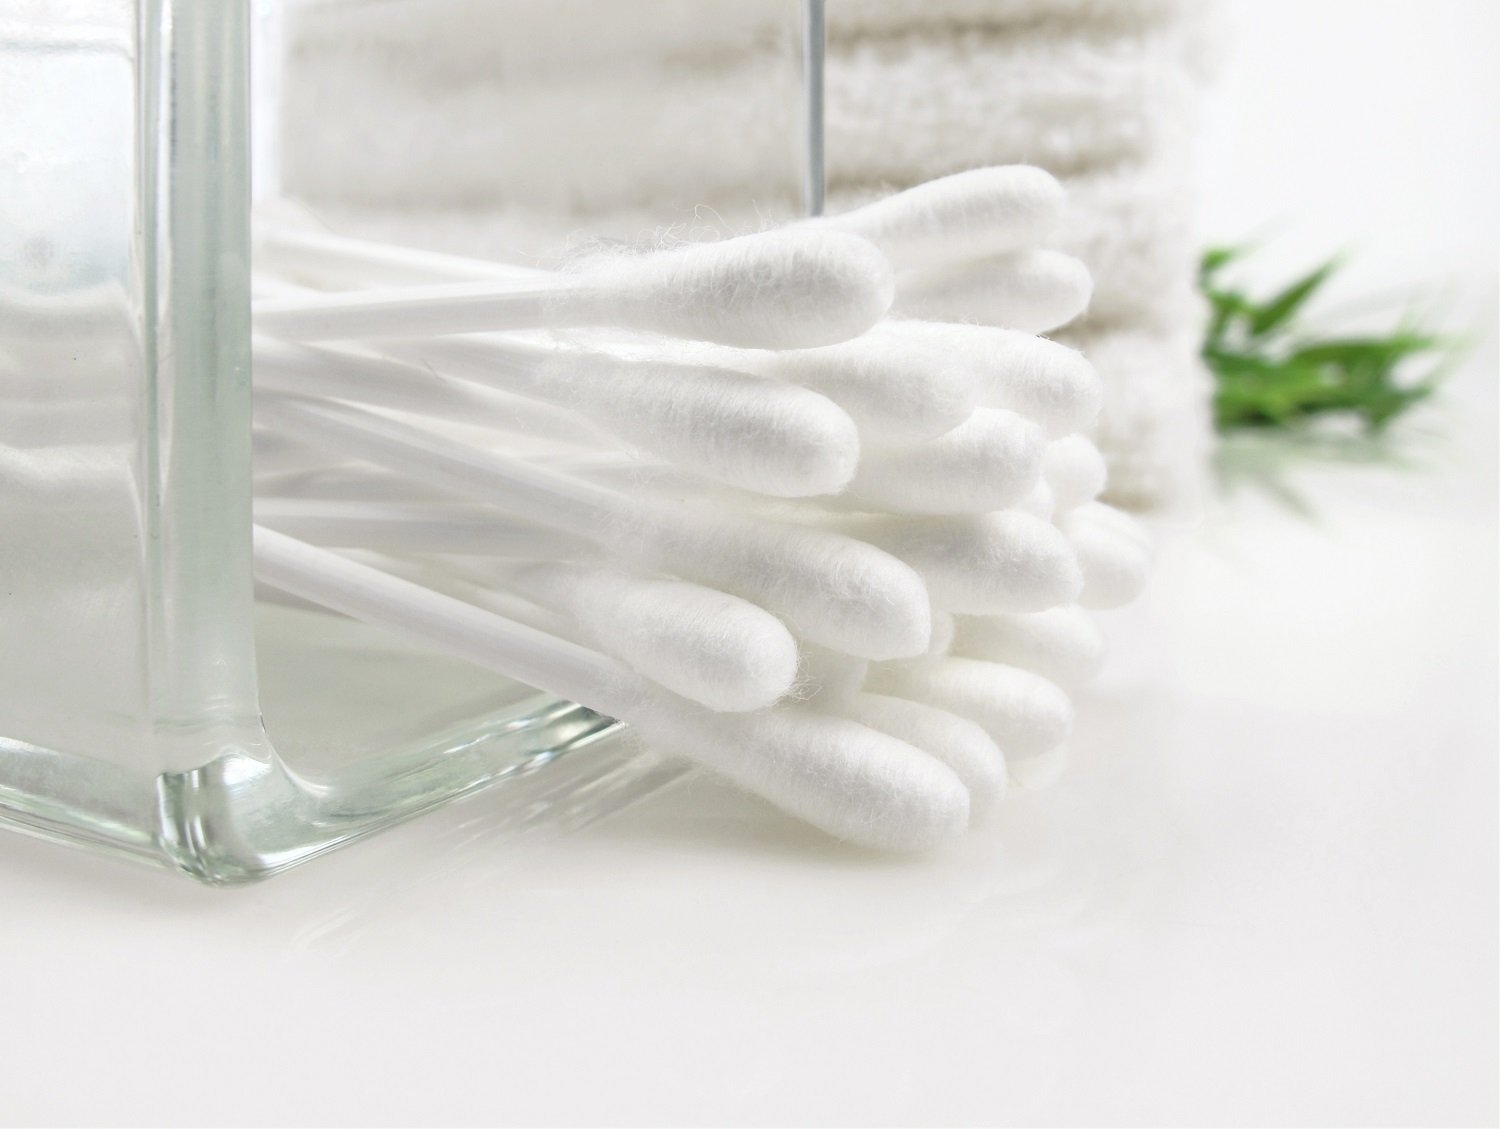 Puñado de hisopos de algodón dentro de un frasco de vidrio. | Foto: Shutterstock